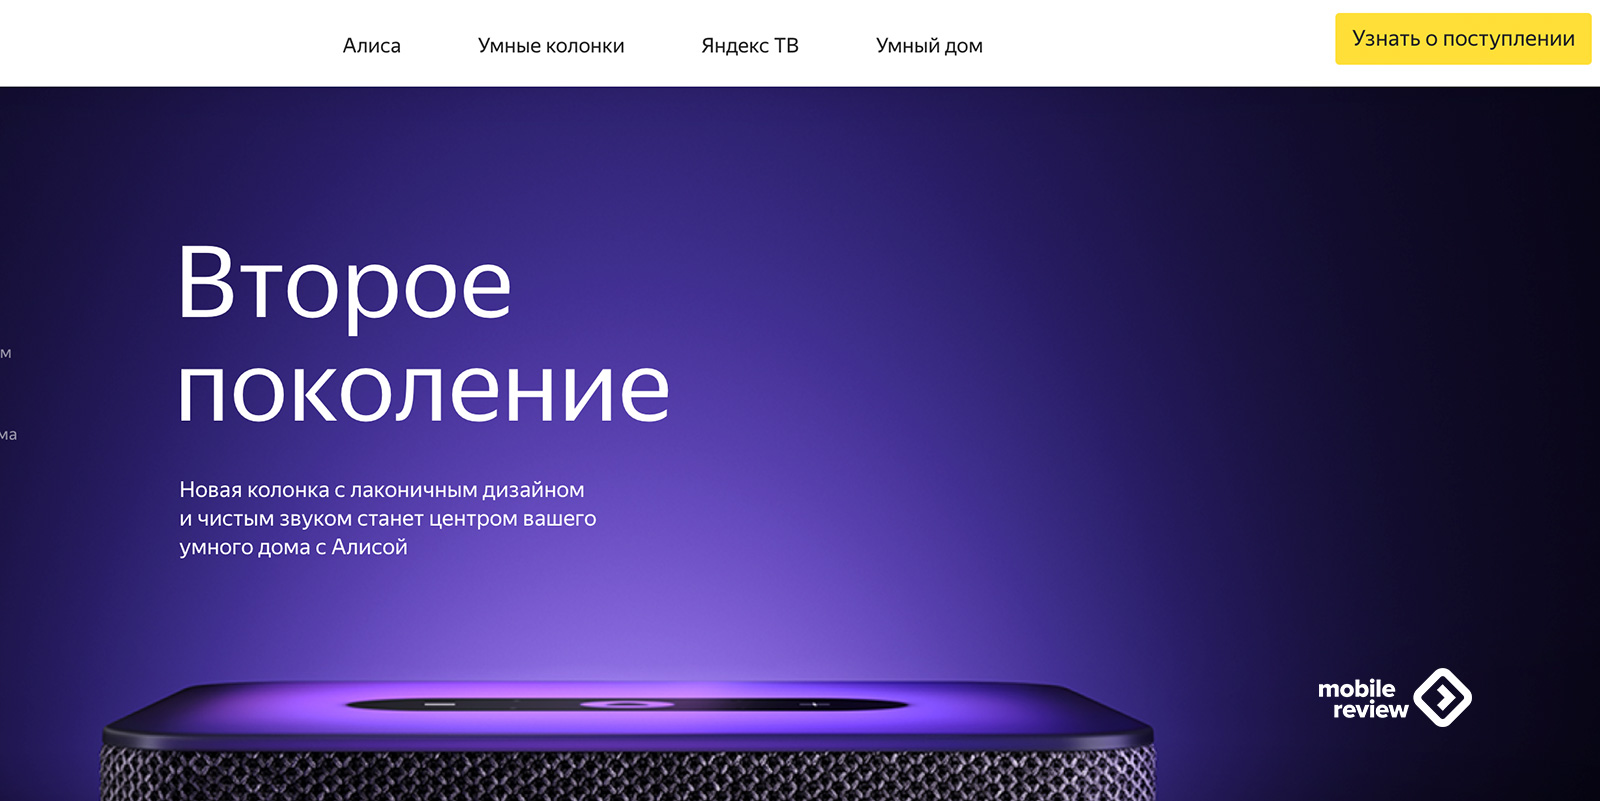 Яндекс станция 2.0